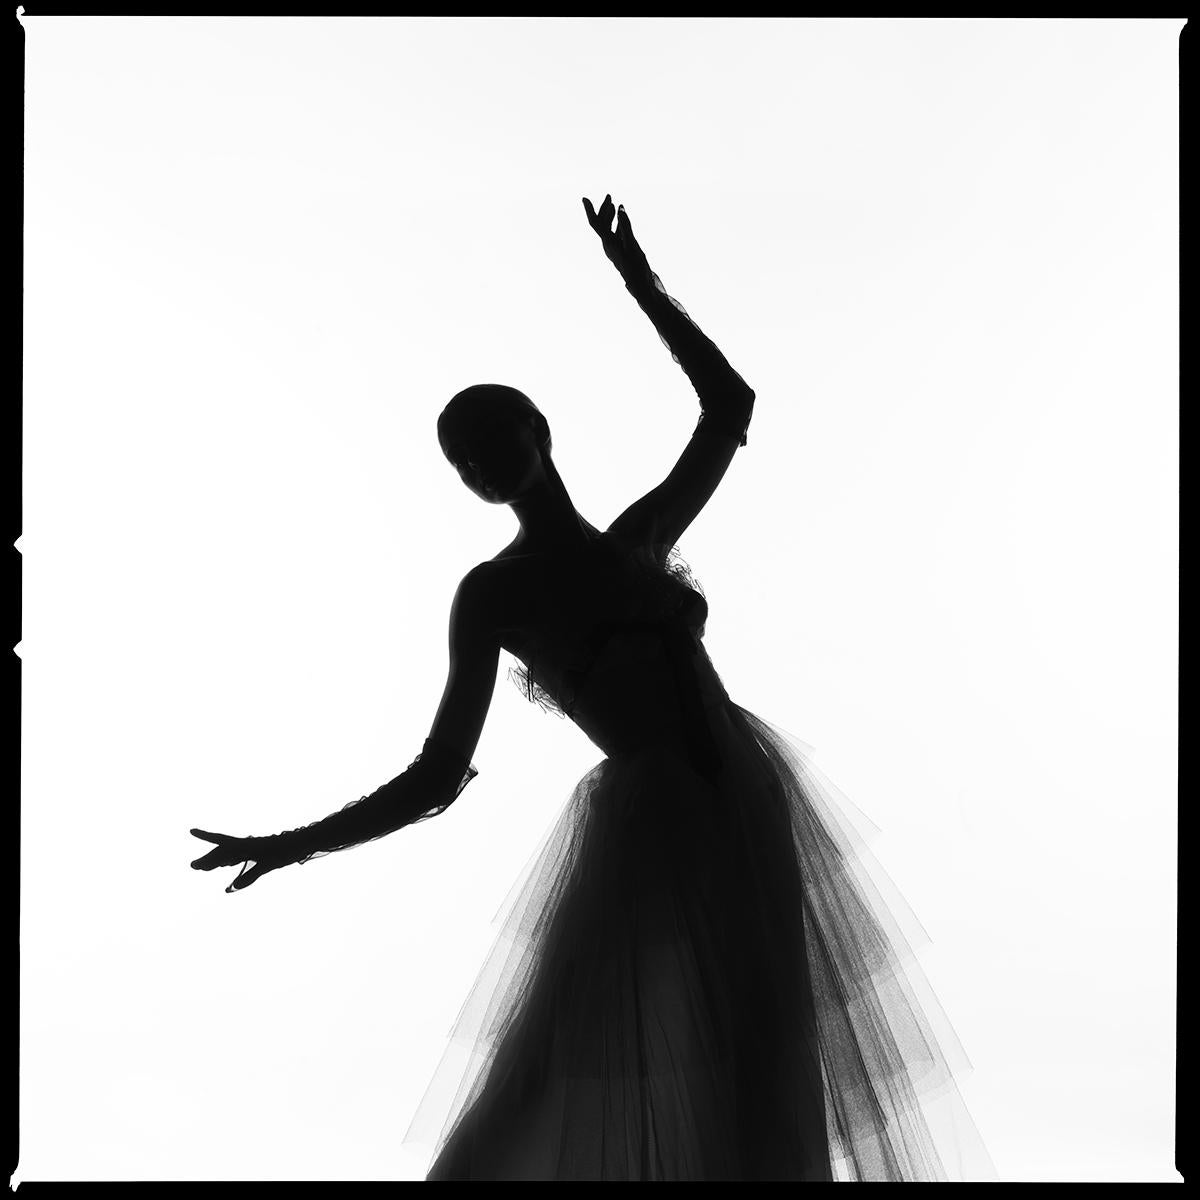 Tyler Shields - Kleid Silhouette, Fotografie 2020, gedruckt nach